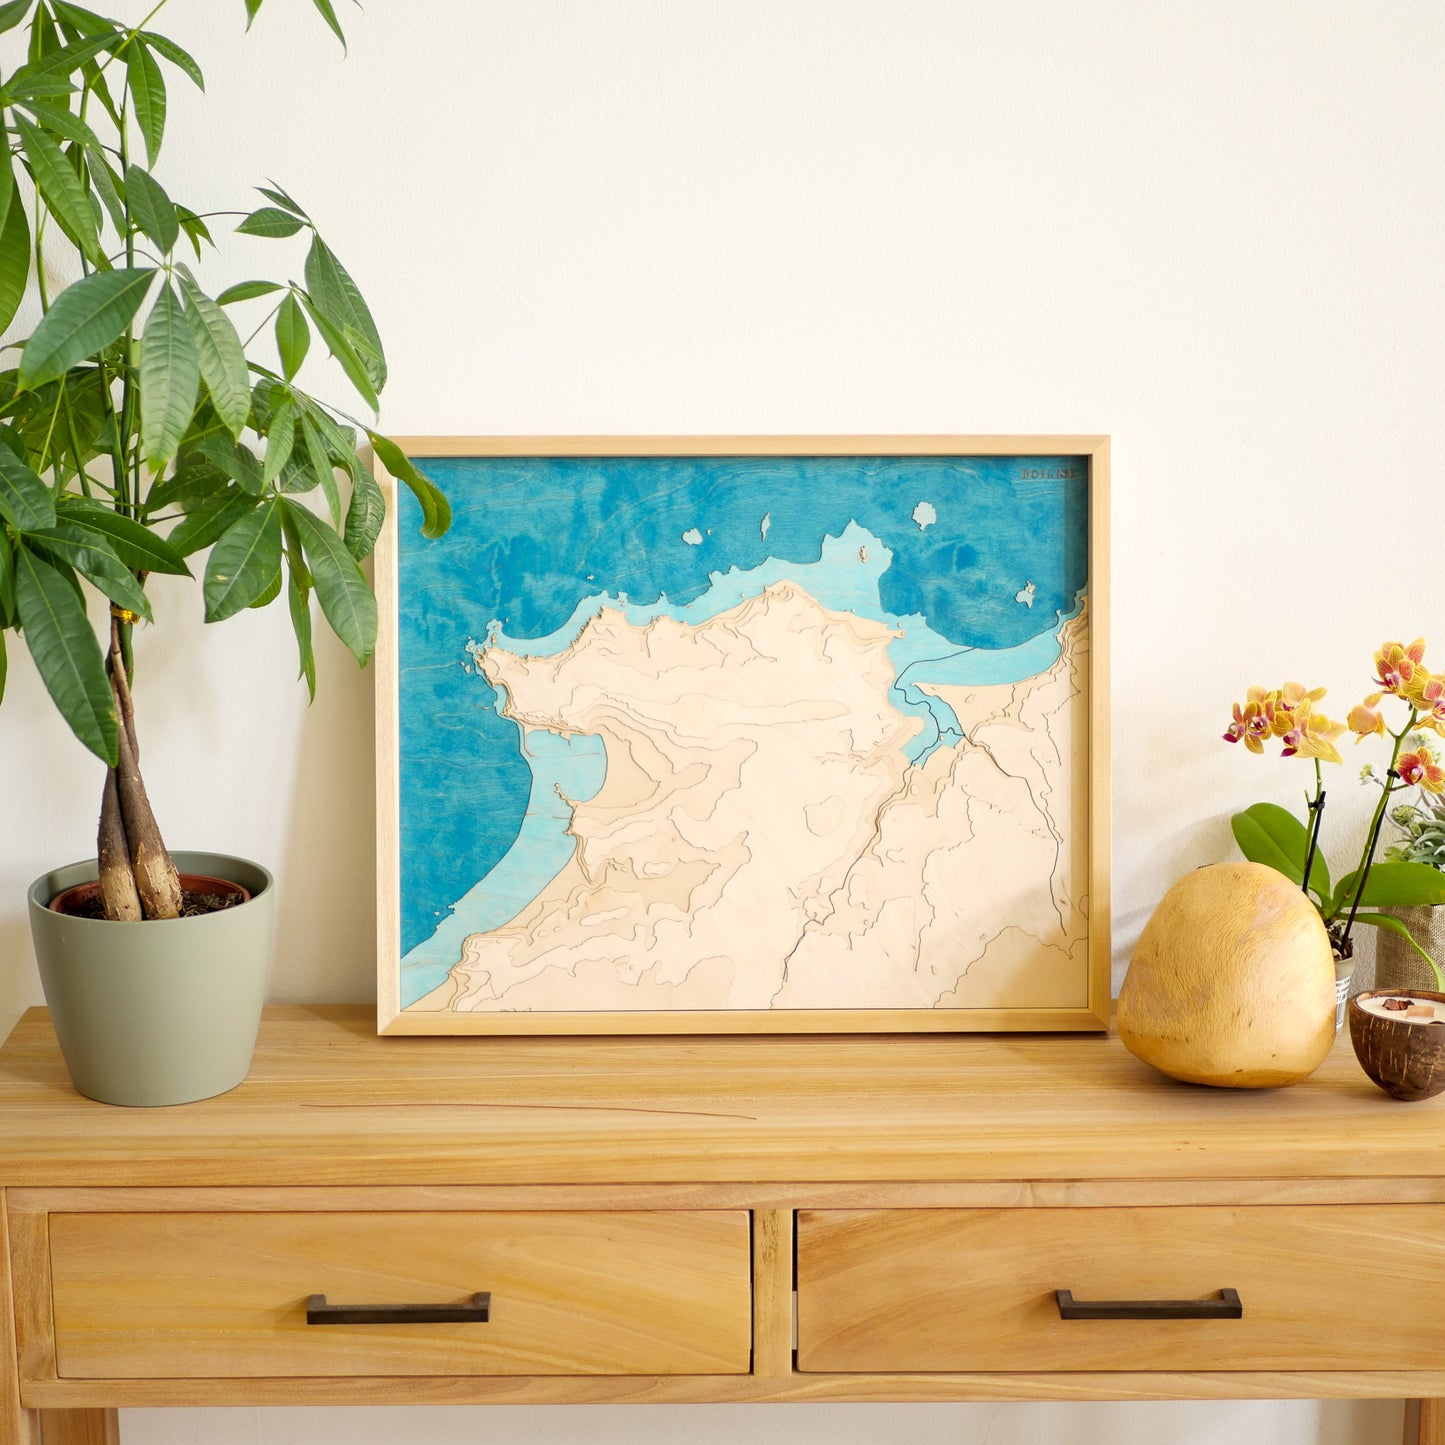 Décoration en bois avec une commode, un galet de chêne et un tableau topographique d'Erquy